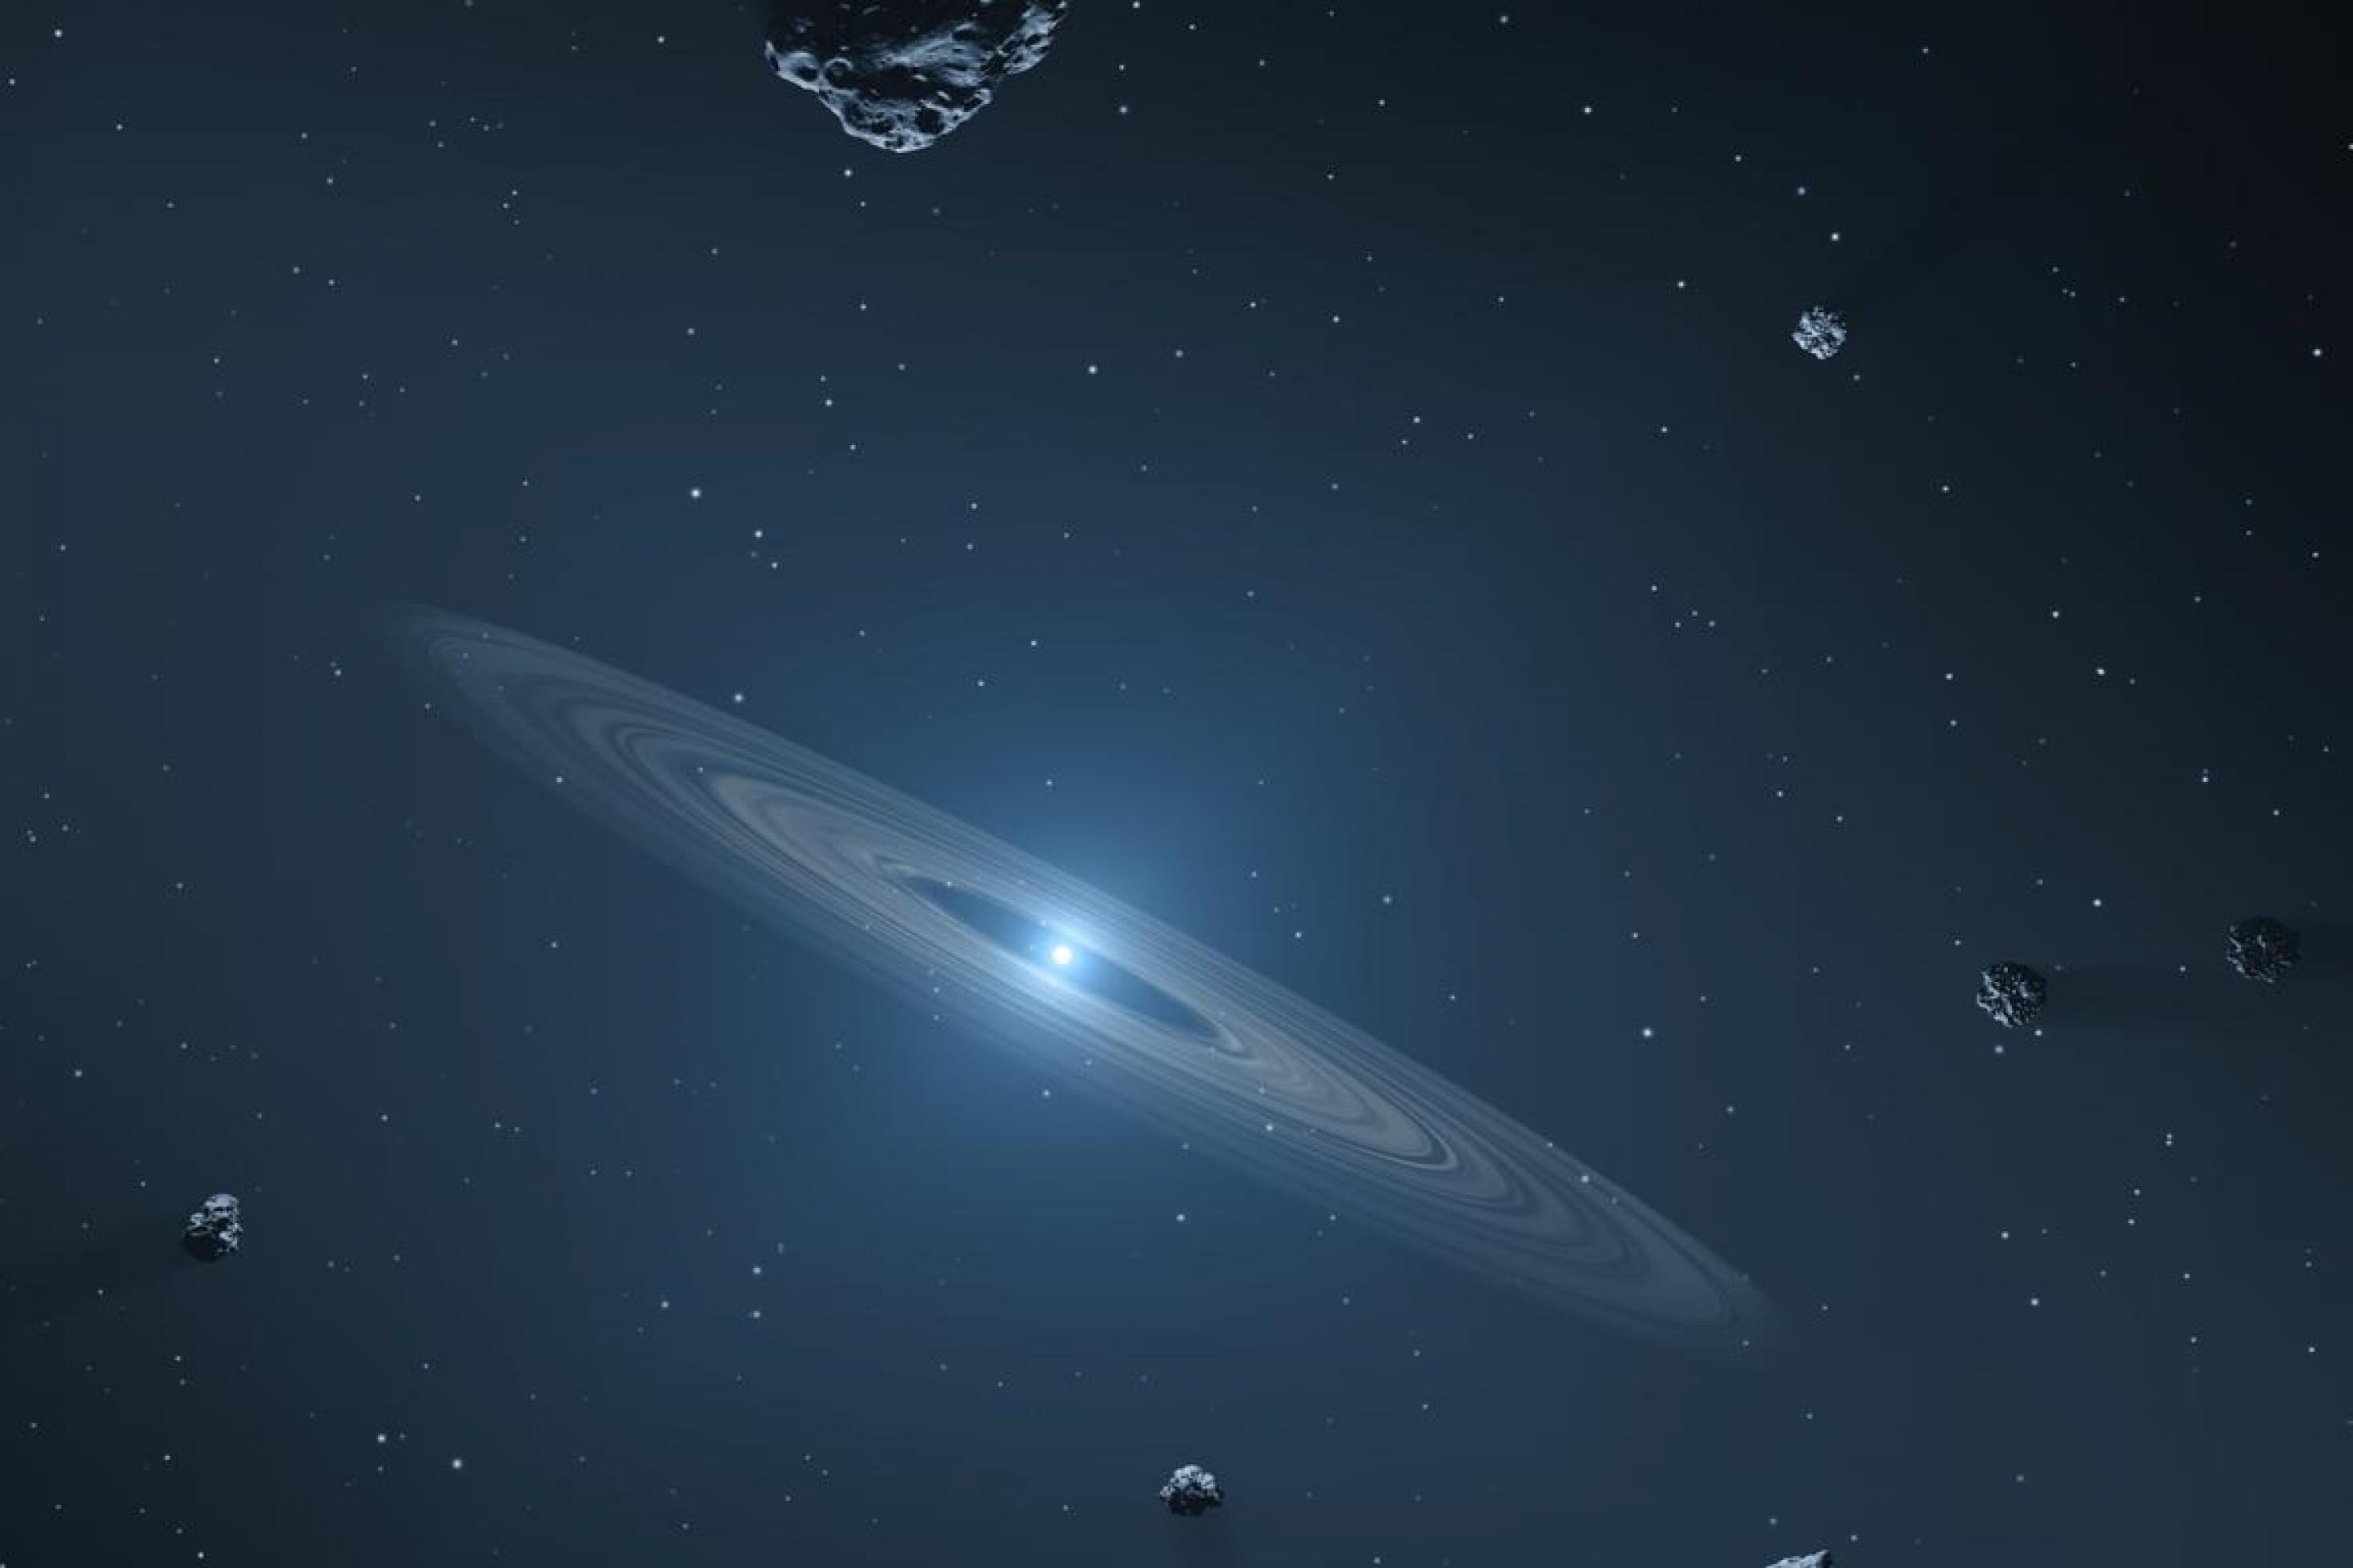 Ein hell leuchtender Weißer Zwerg, der von einer Materiescheibe umgeben ist. Mit im Bild sind diverse steinige Himmelskörper, vermutlich Asteroiden.